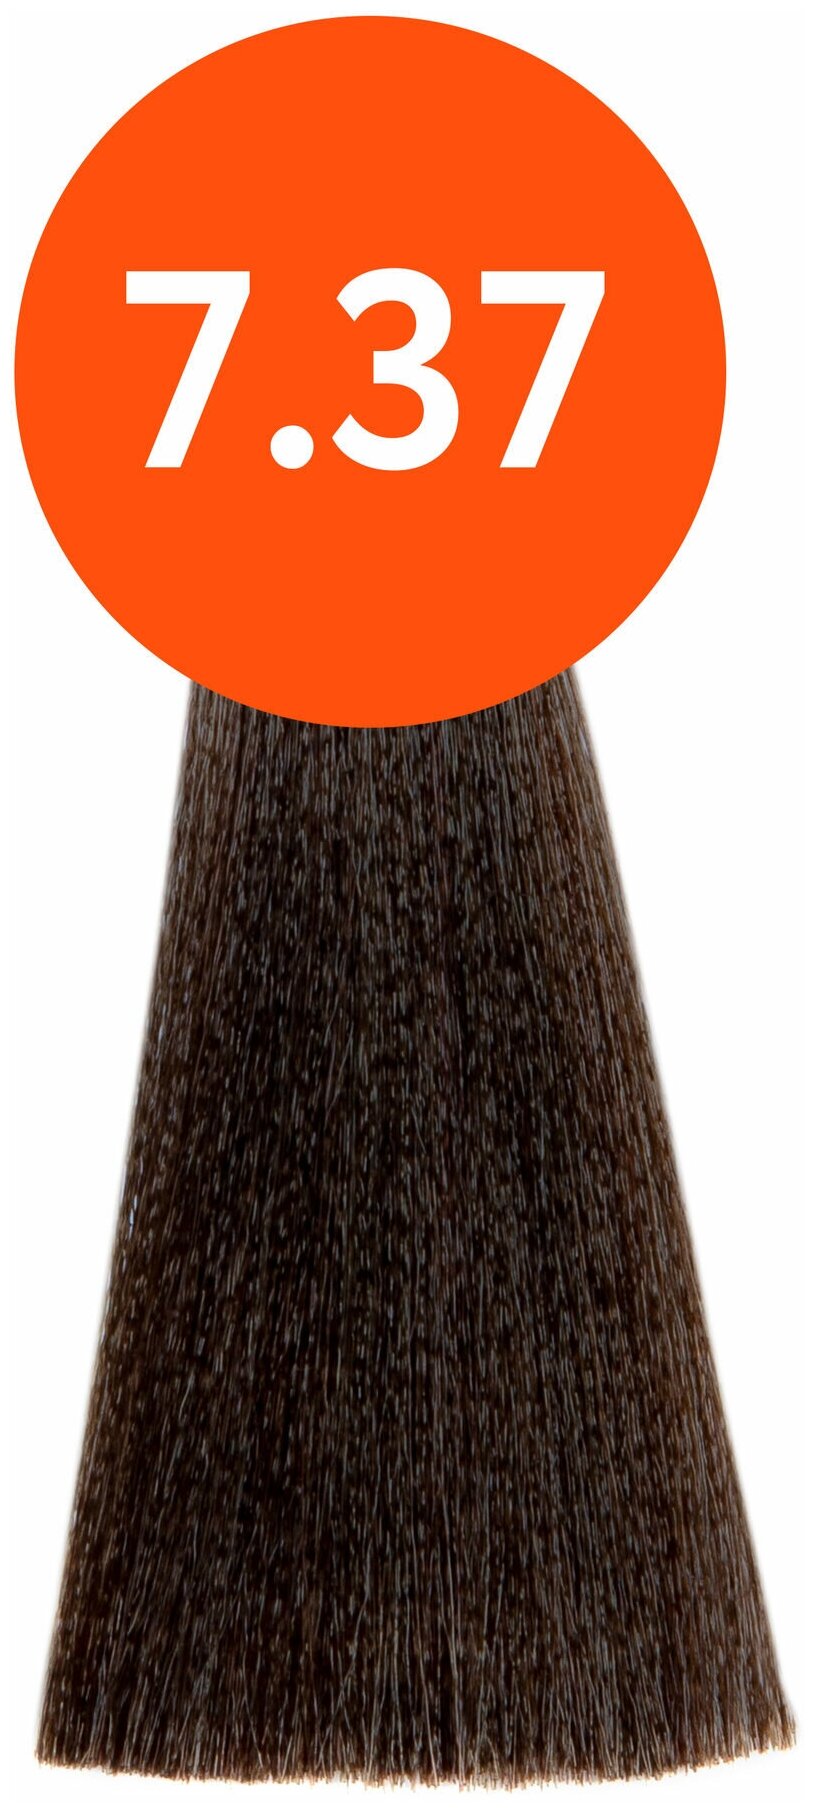 OLLIN Professional Стойкая крем-краска для волос N-Joy Color Cream, 7/37 русый золотисто-коричневый, 100 мл